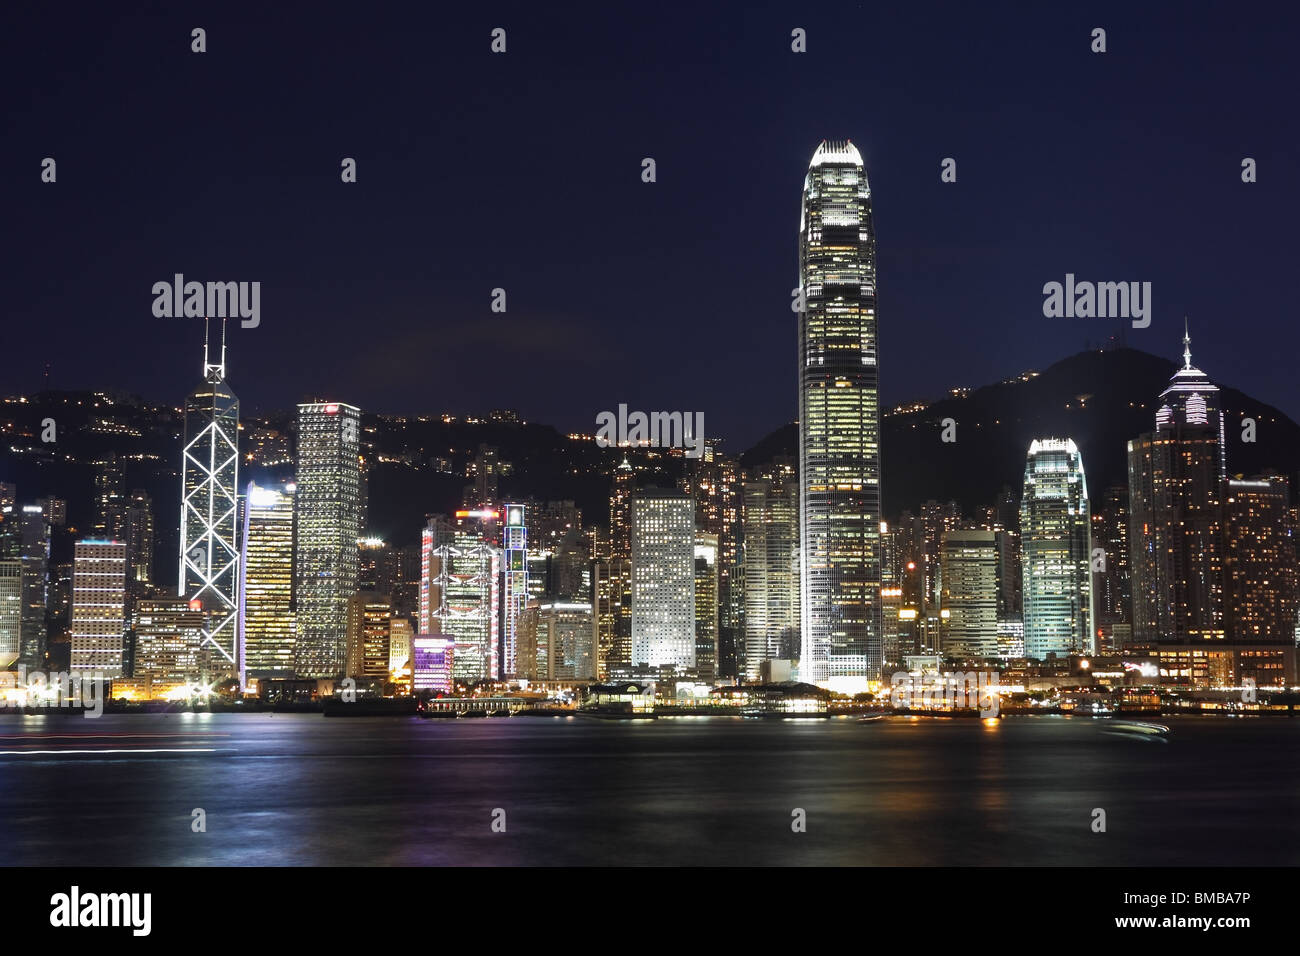 Hong Kong island photographed from Kowloon at night Stock Photo